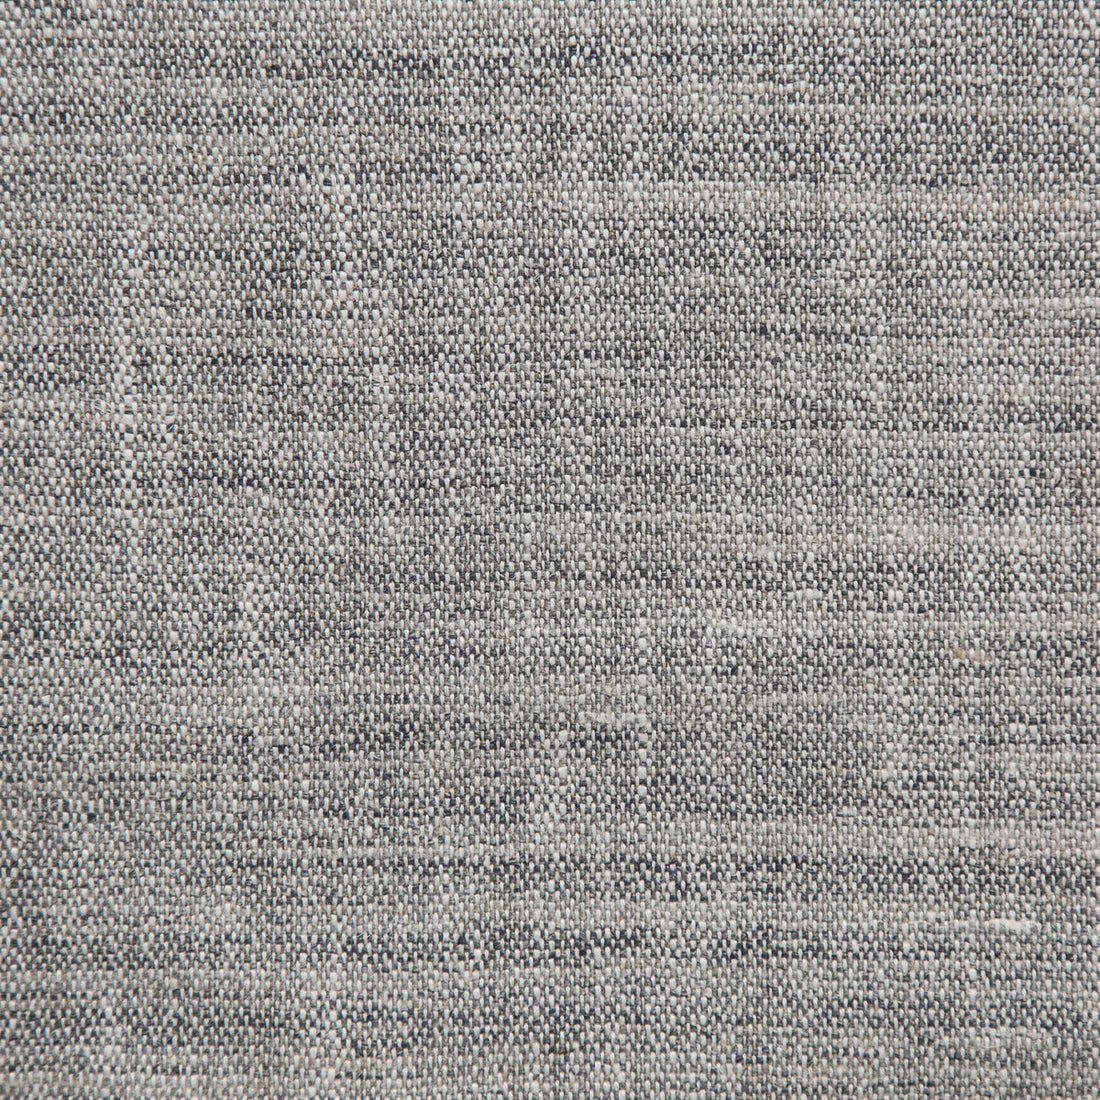 Kravet Design fabric in 35852-121 color - pattern 35852.121.0 - by Kravet Design